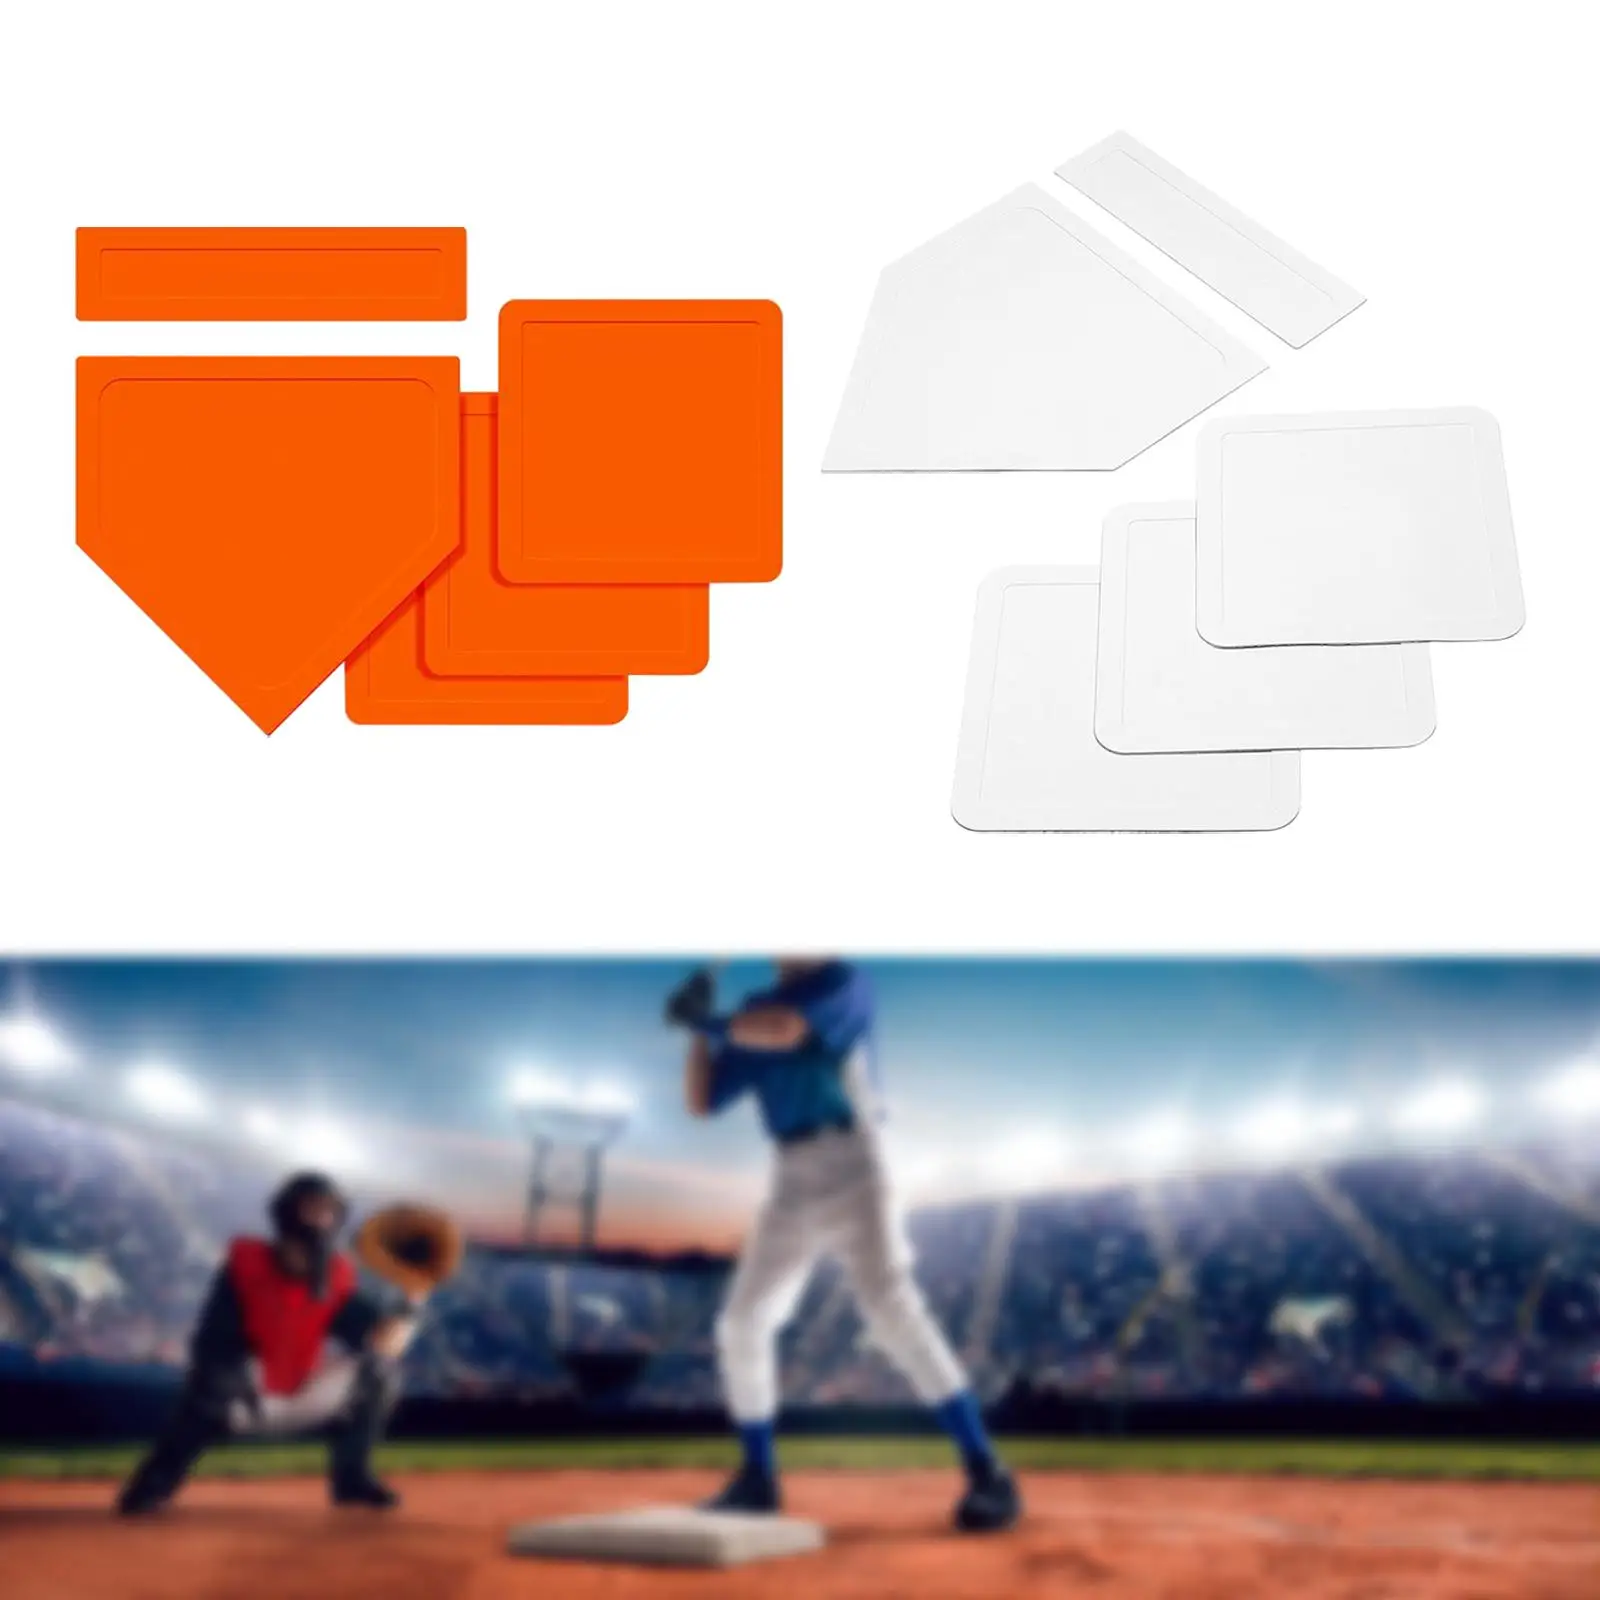 Baseball Softball Base Set, Folding baseball base for softball baseball